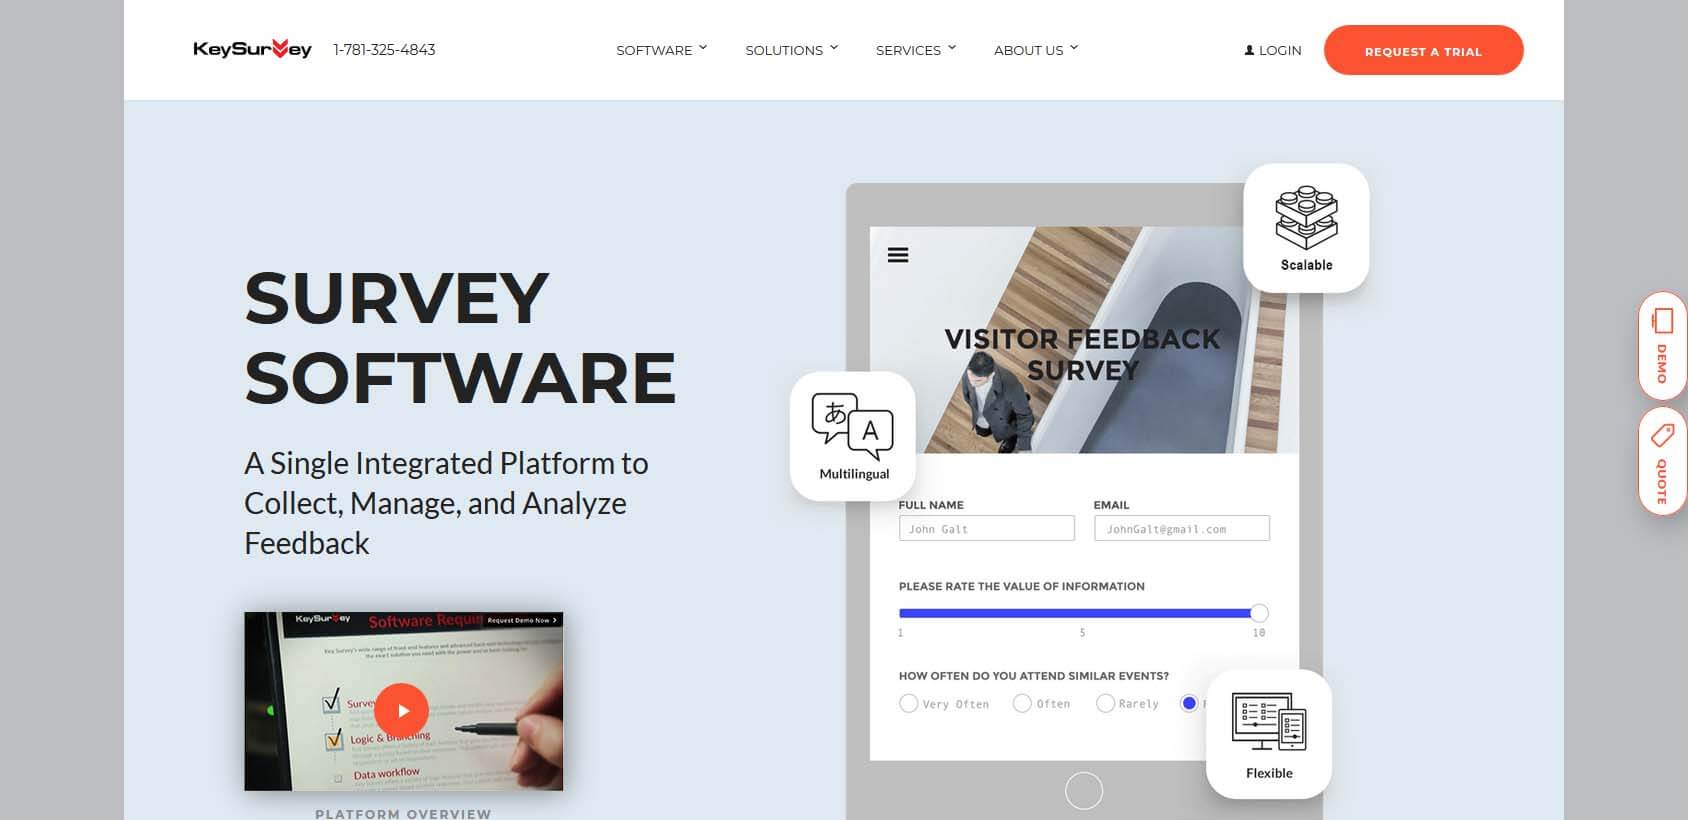 KeySurvey homepage